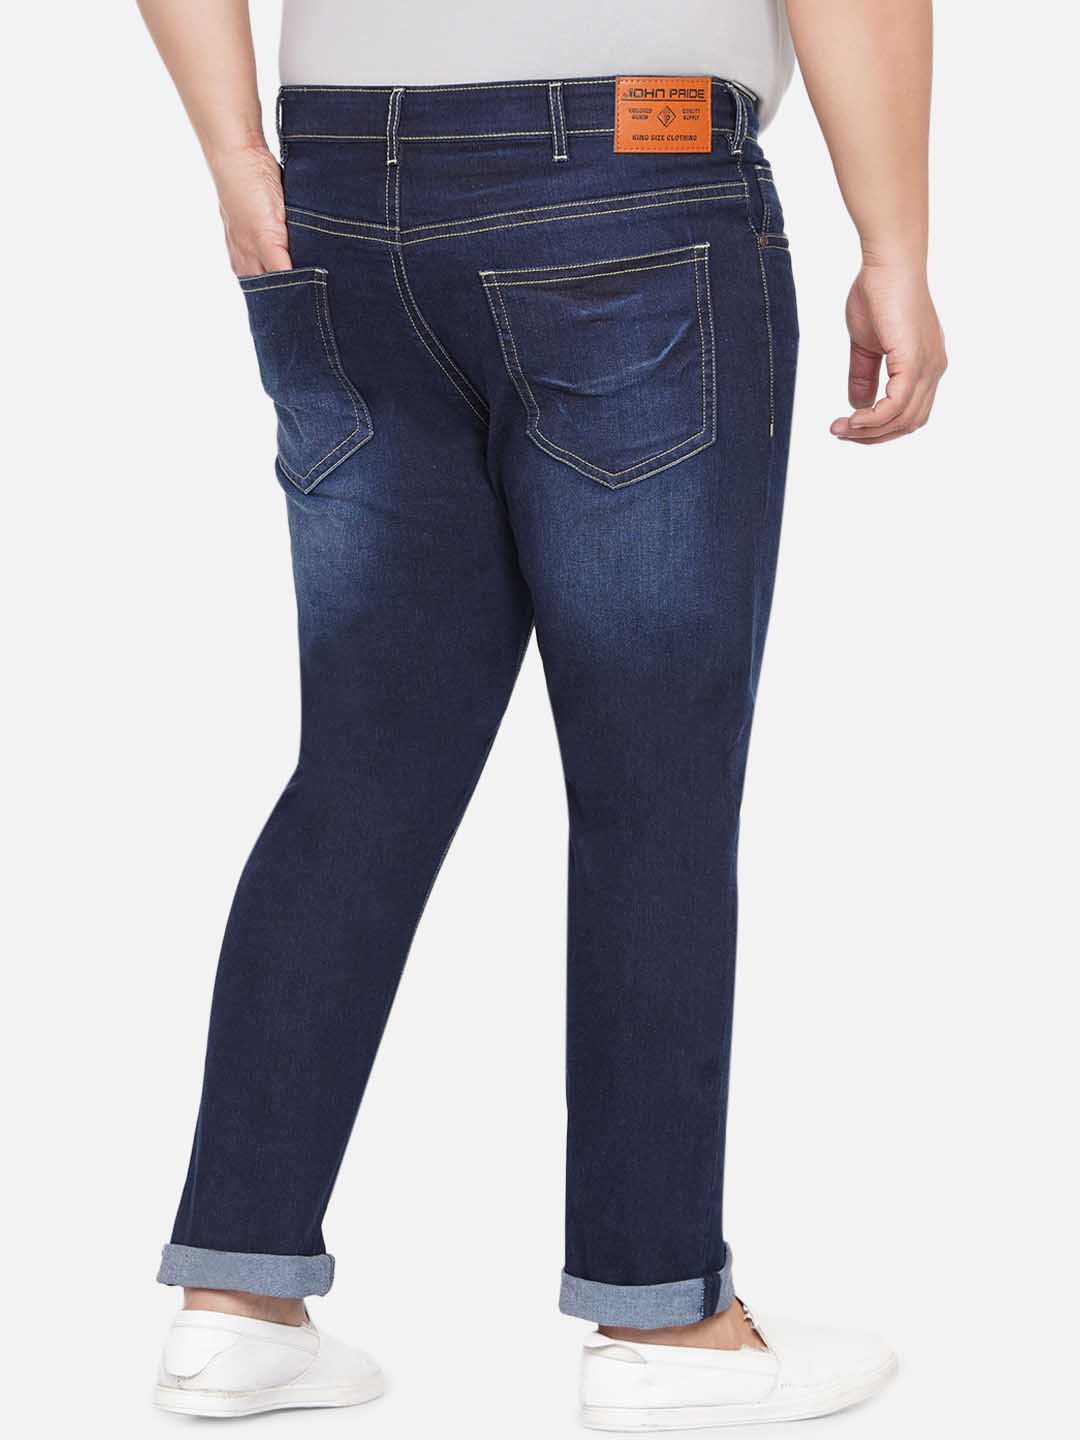 bottomwear/jeans/JPJ12234/jpj12234-2.jpg